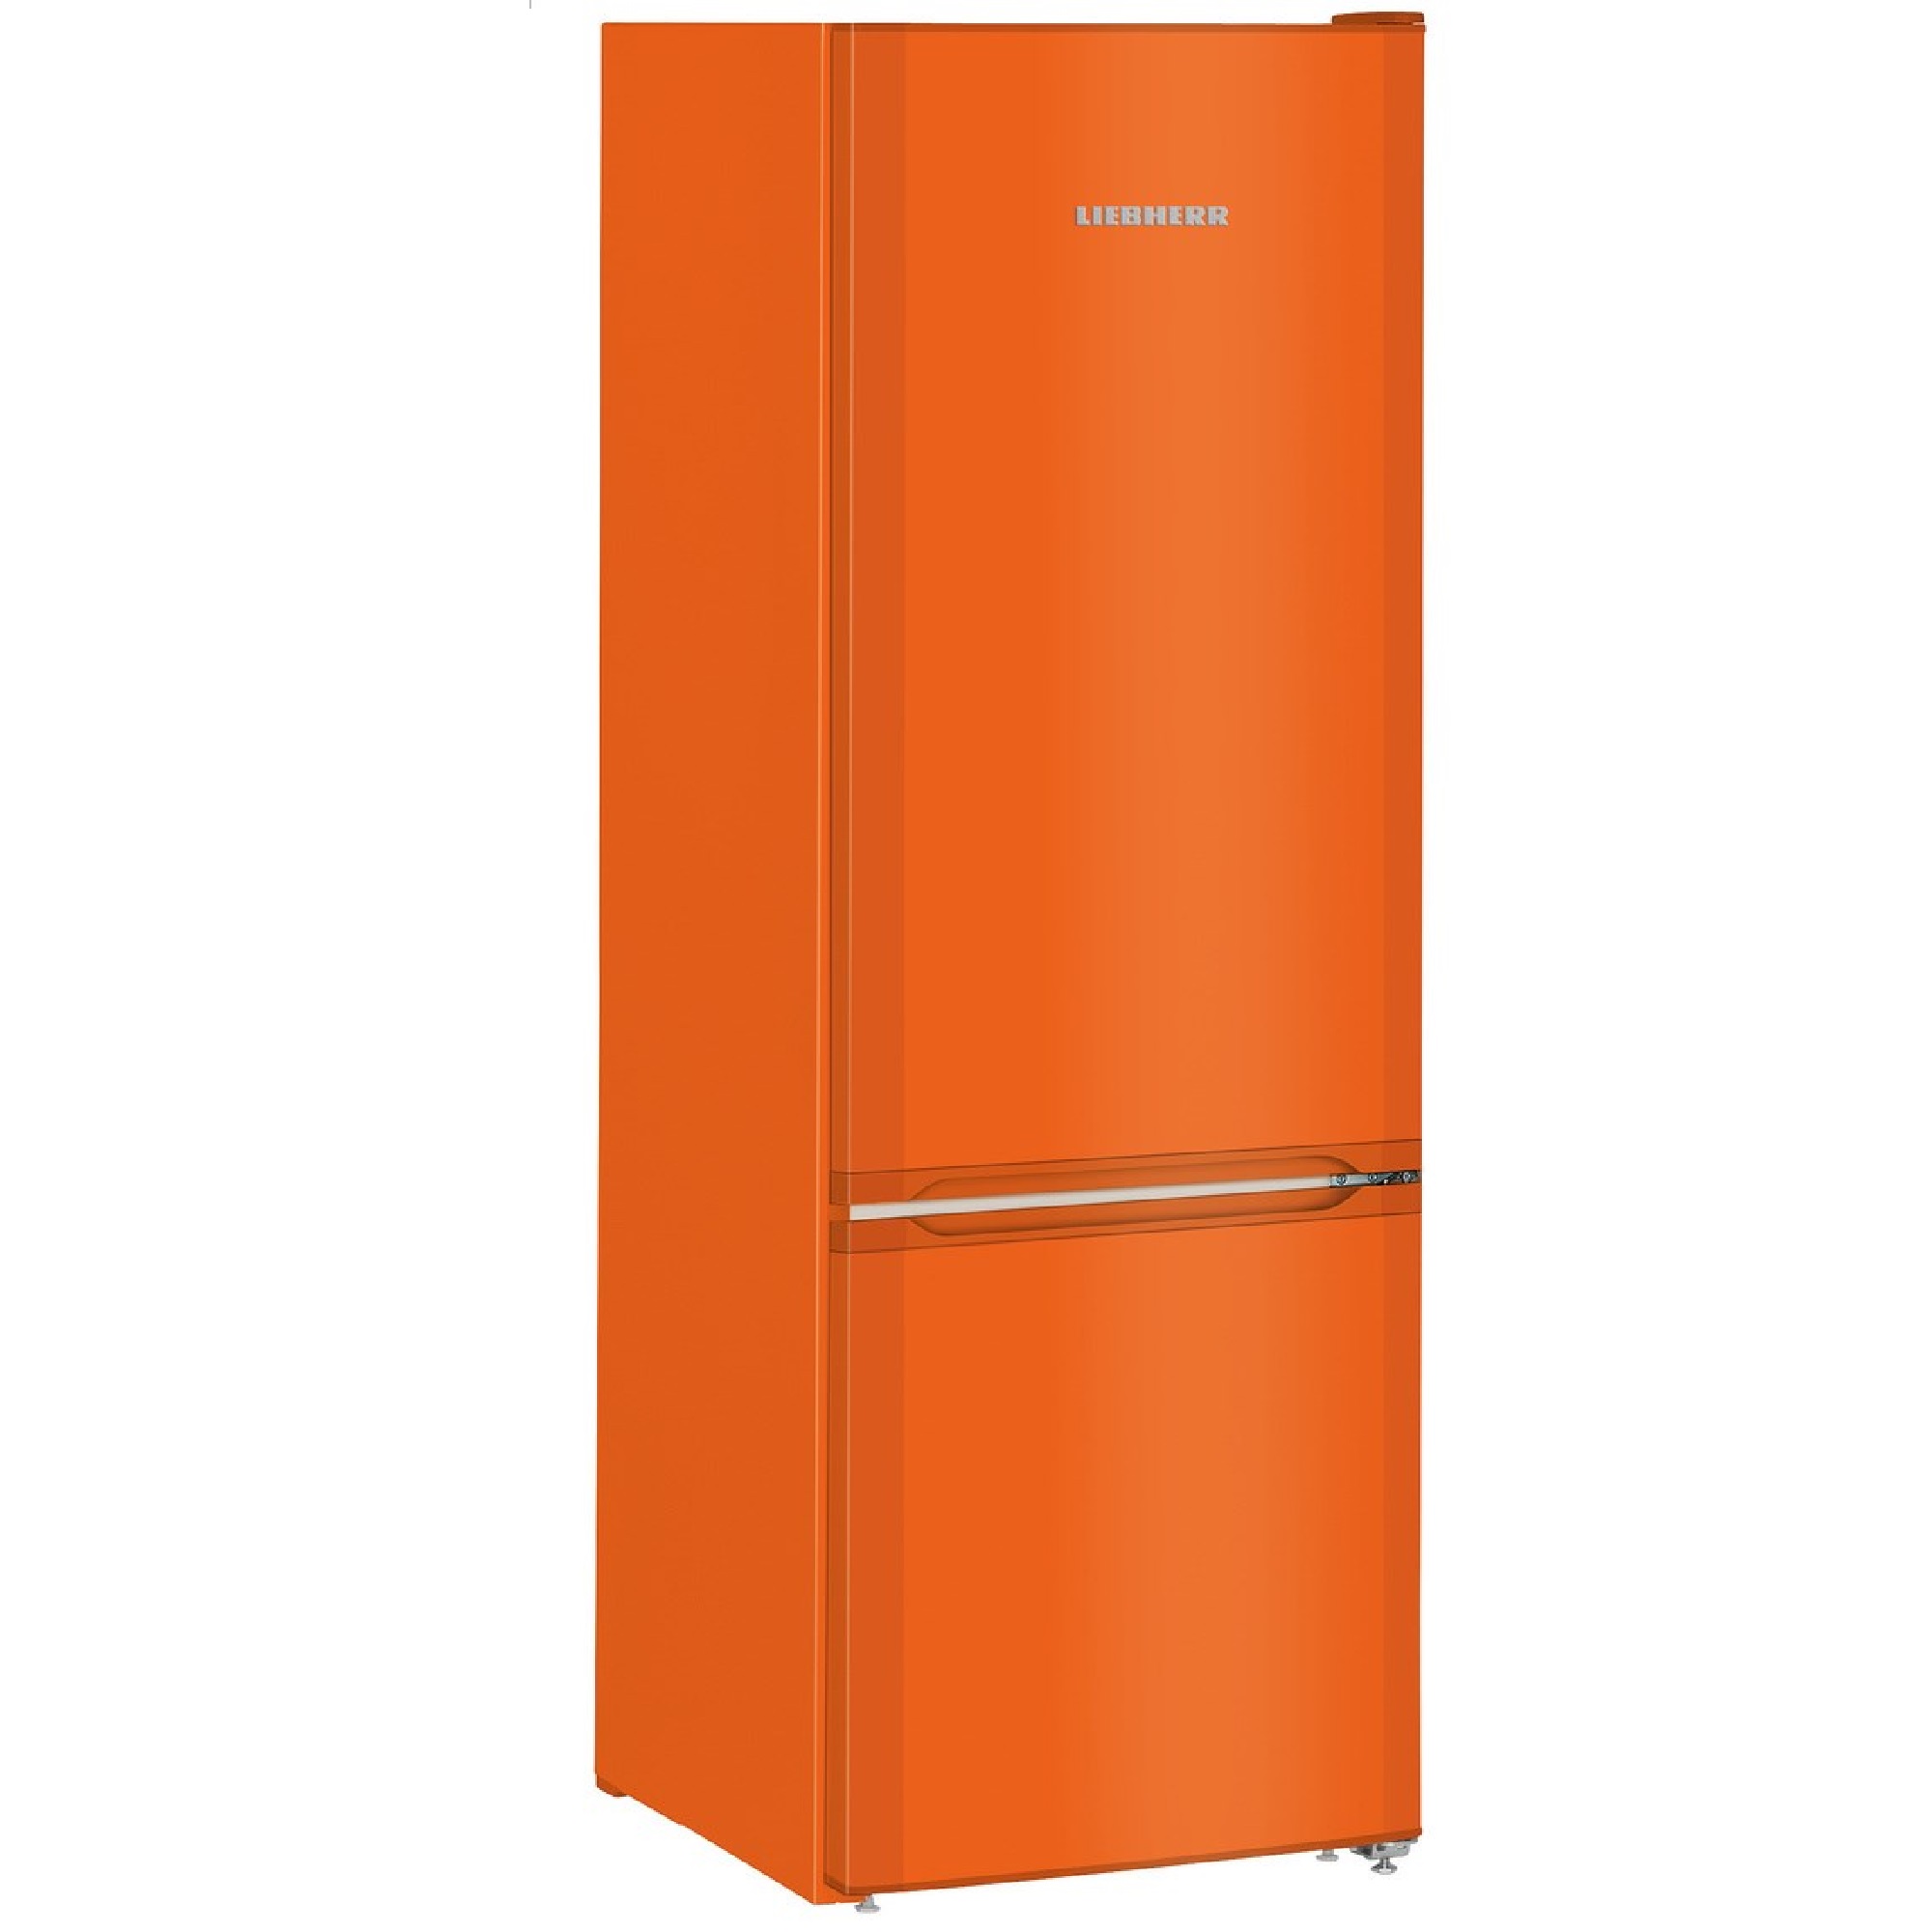 Интернет магазин холодильников в москве недорого. Холодильник Liebherr Cuno 2831 оранжевый. Холодильник Liebherr CNNO 4313 оранжевый. Холодильник Liebherr CNNO 4313. Холодильник Liebherr Cuno 2831-21.